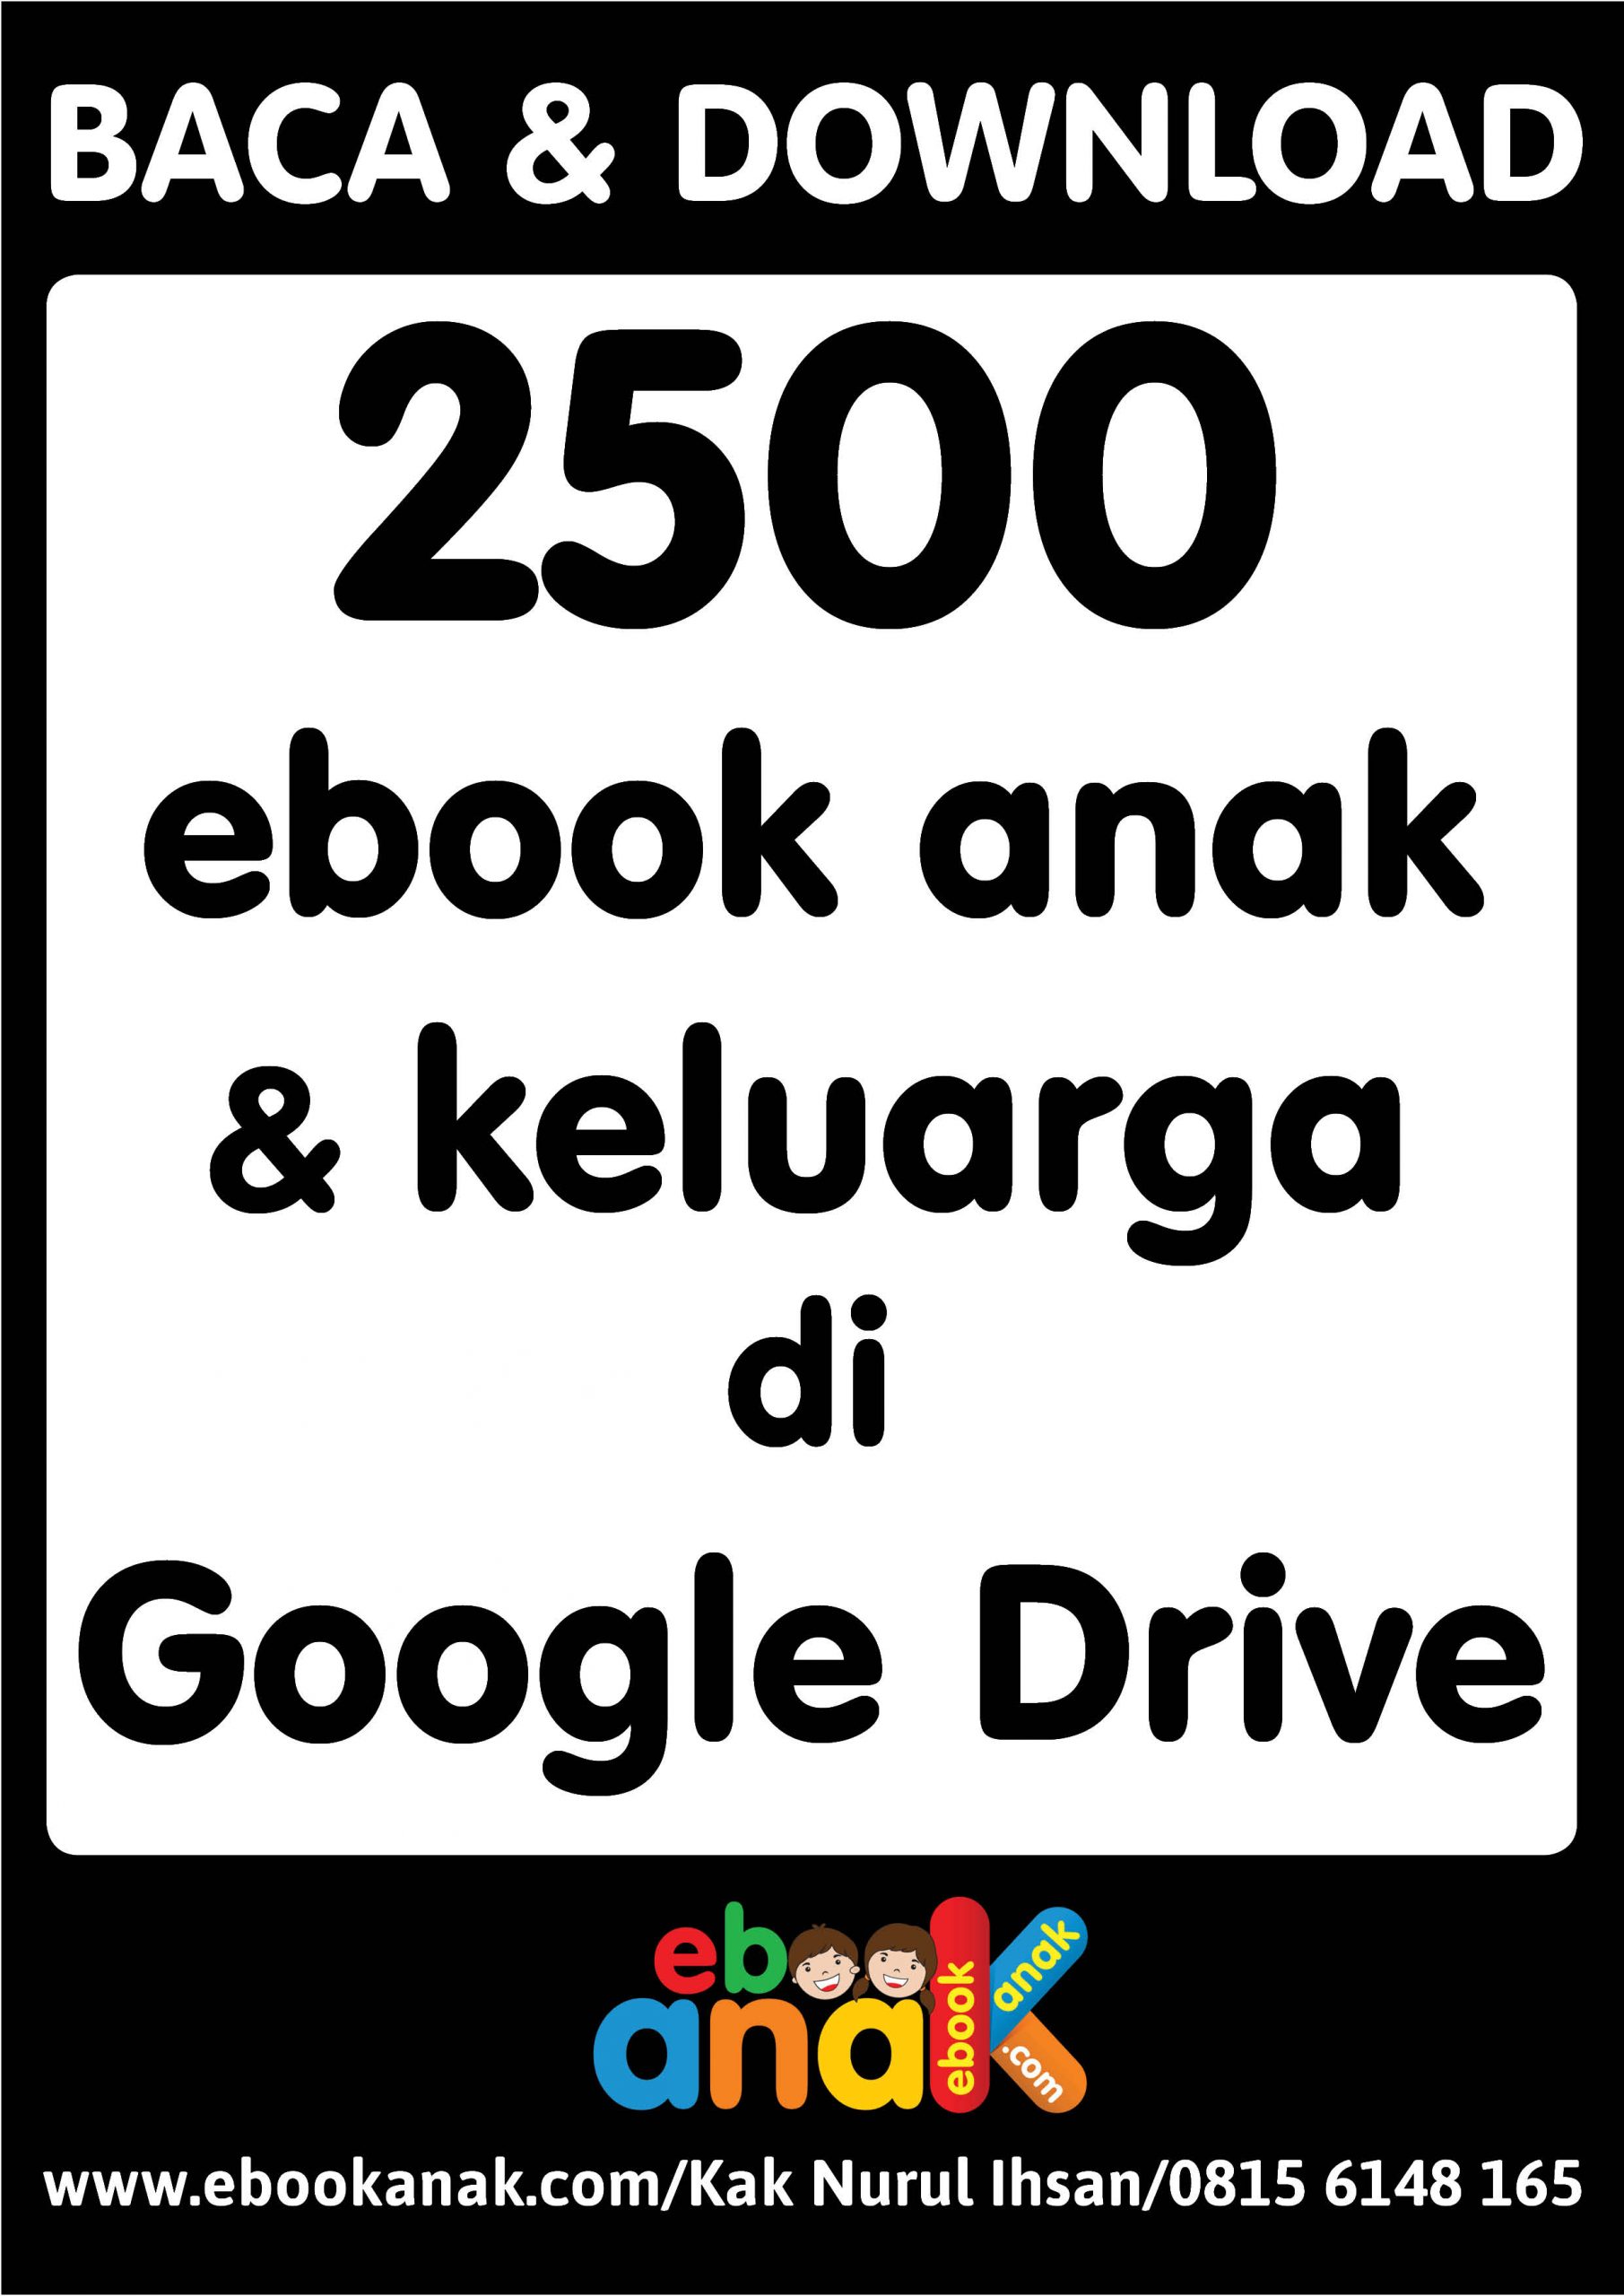 baca dan download 2500 ebook anak dan keluarga di google drive